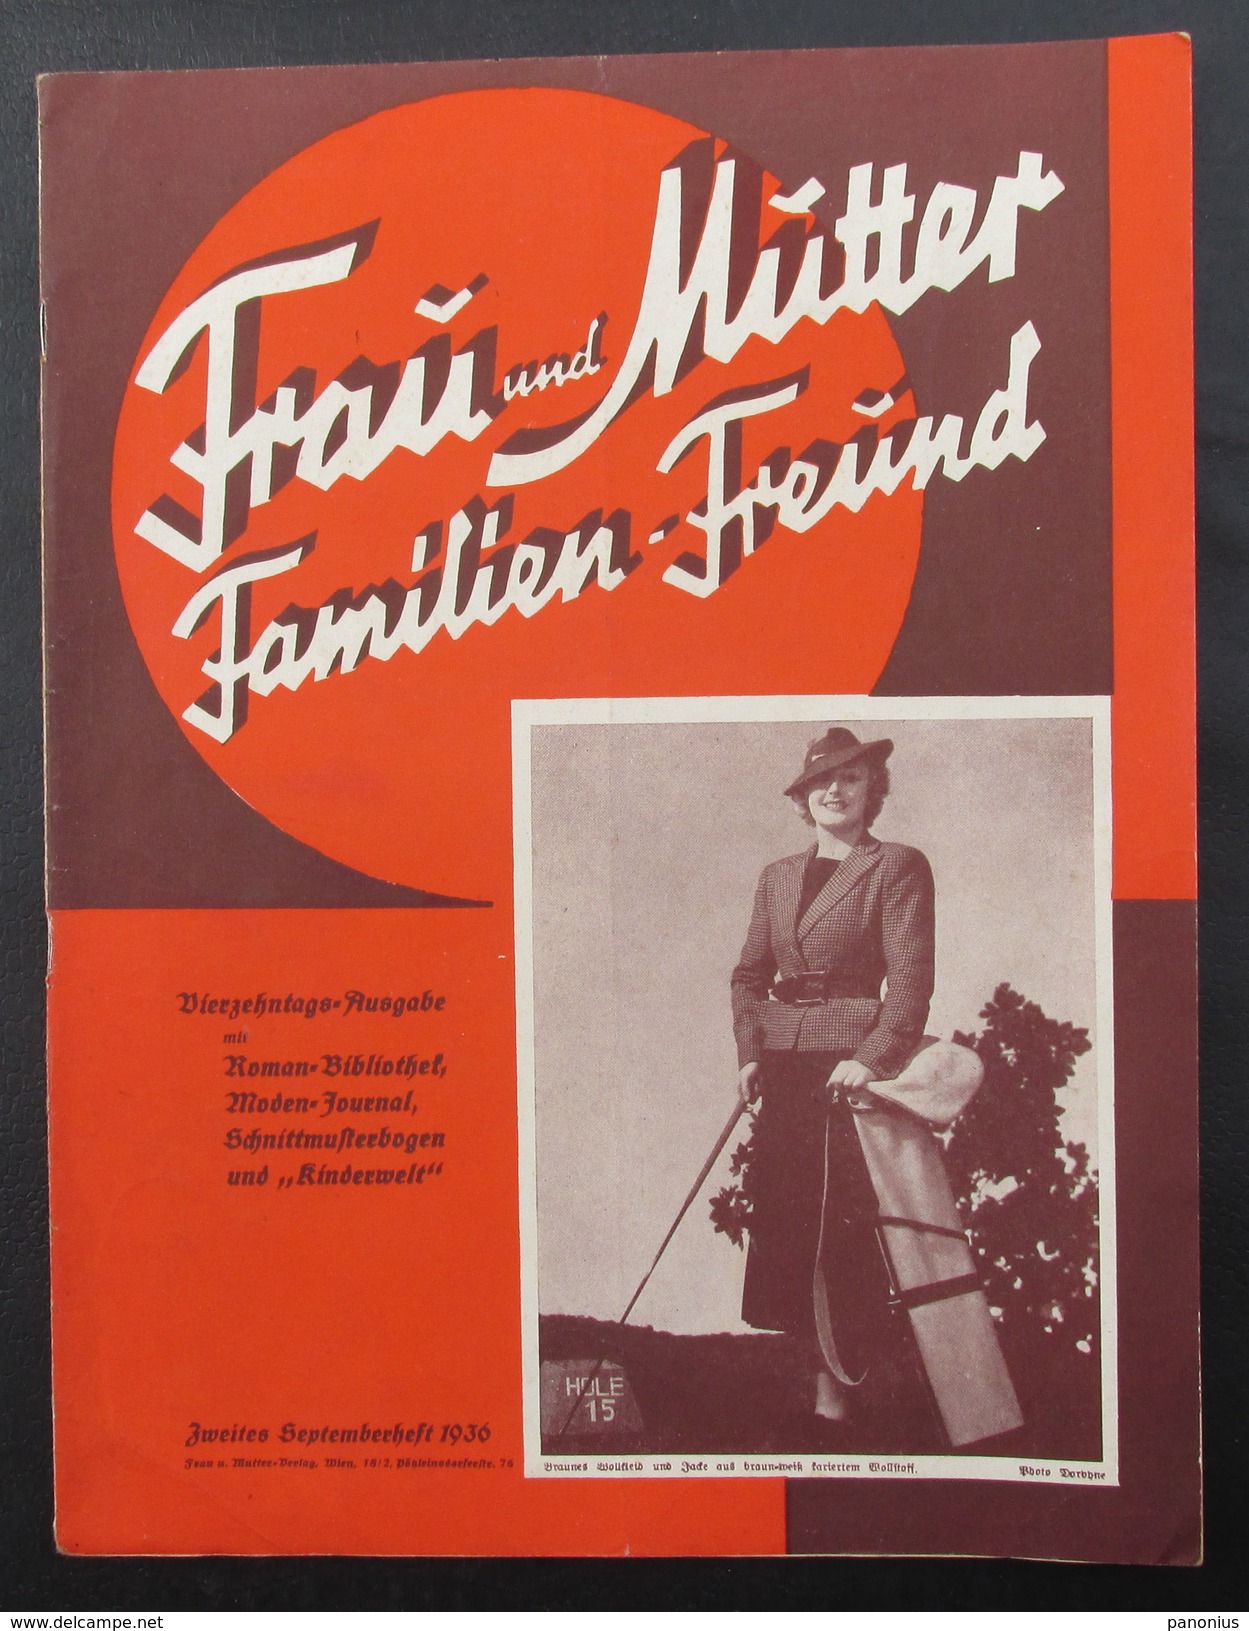 FRAU UND MUTTER FAMILIEN FREUND - Magazine, 1936. Wien, Austria - Mode